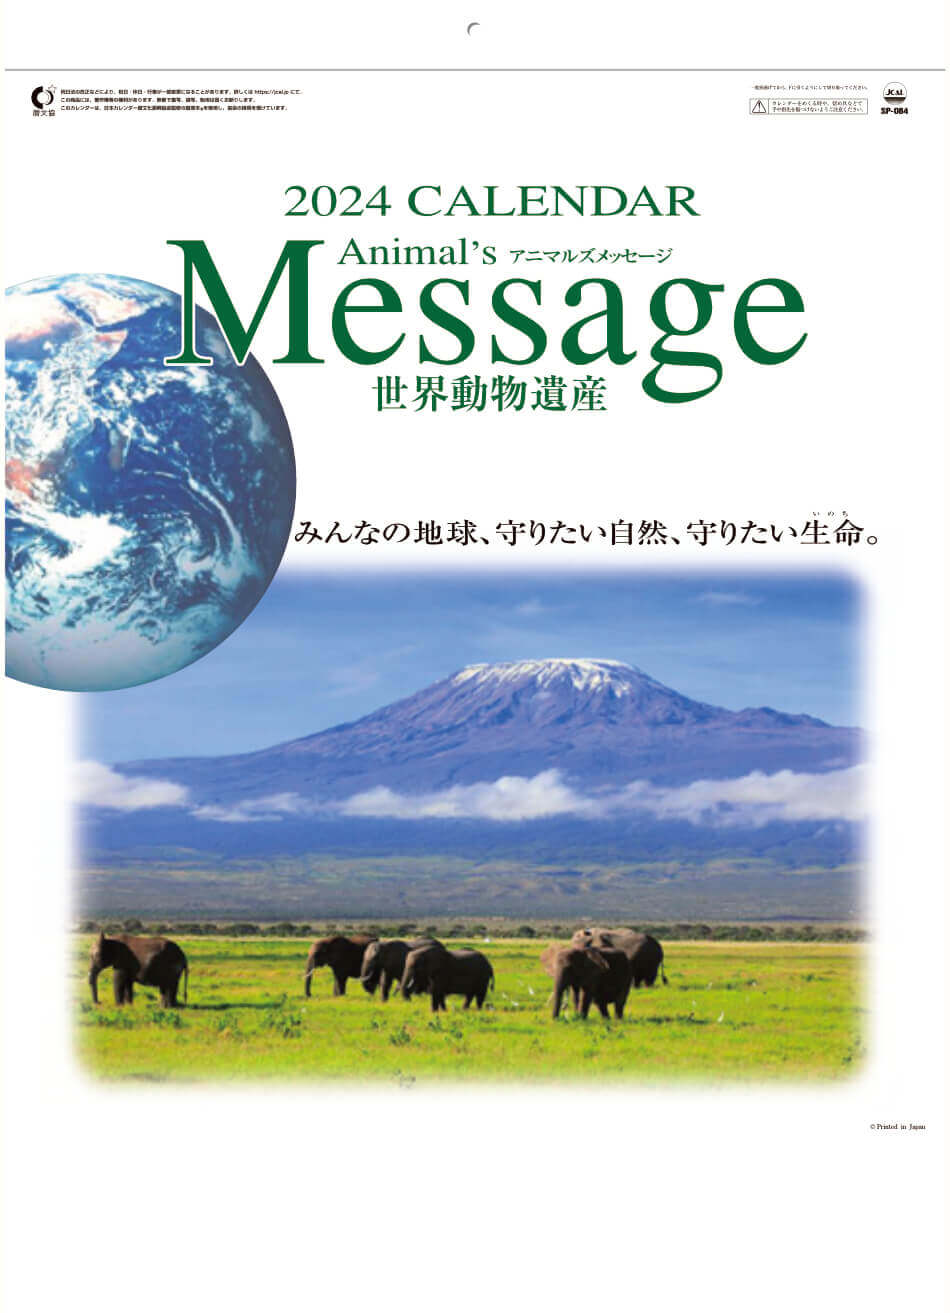 表紙 世界動物遺産 2024年カレンダーの画像